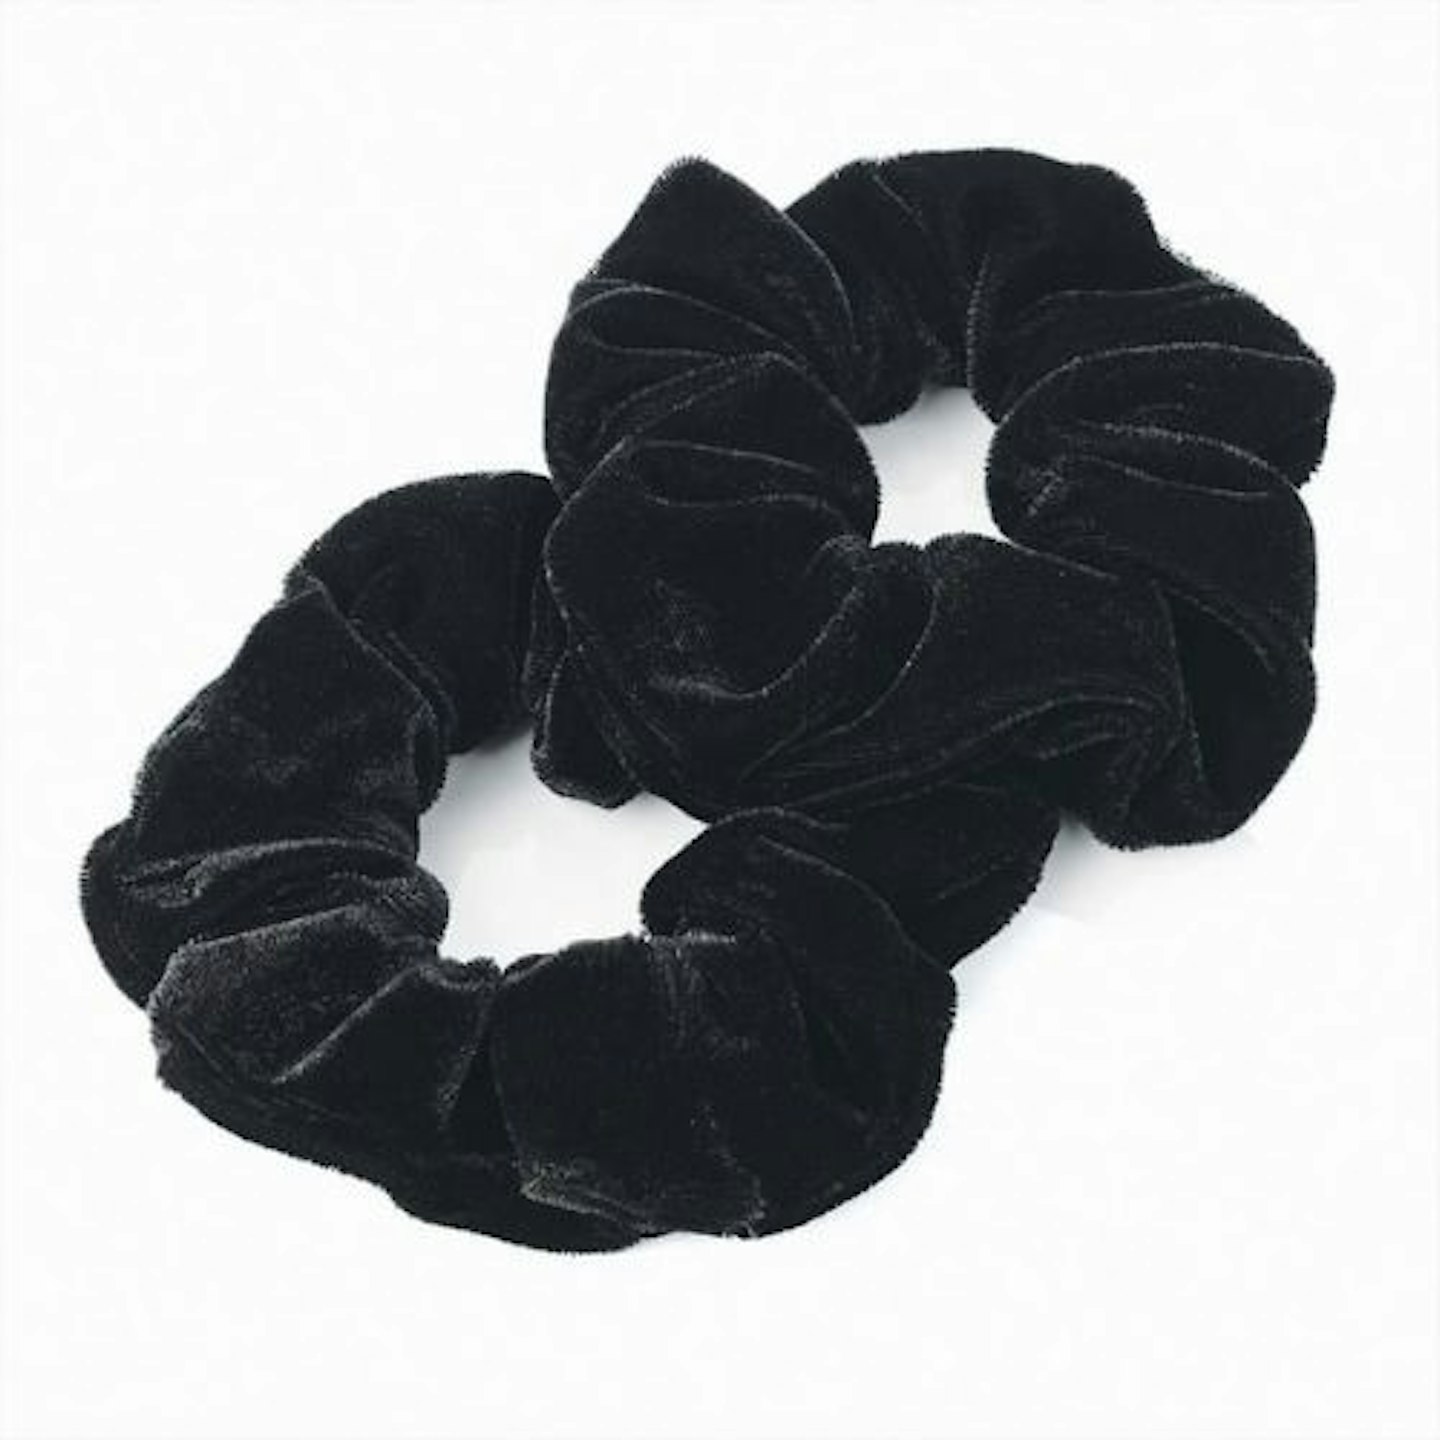 Pair of Black Velvet Feel Hair Scrunchies